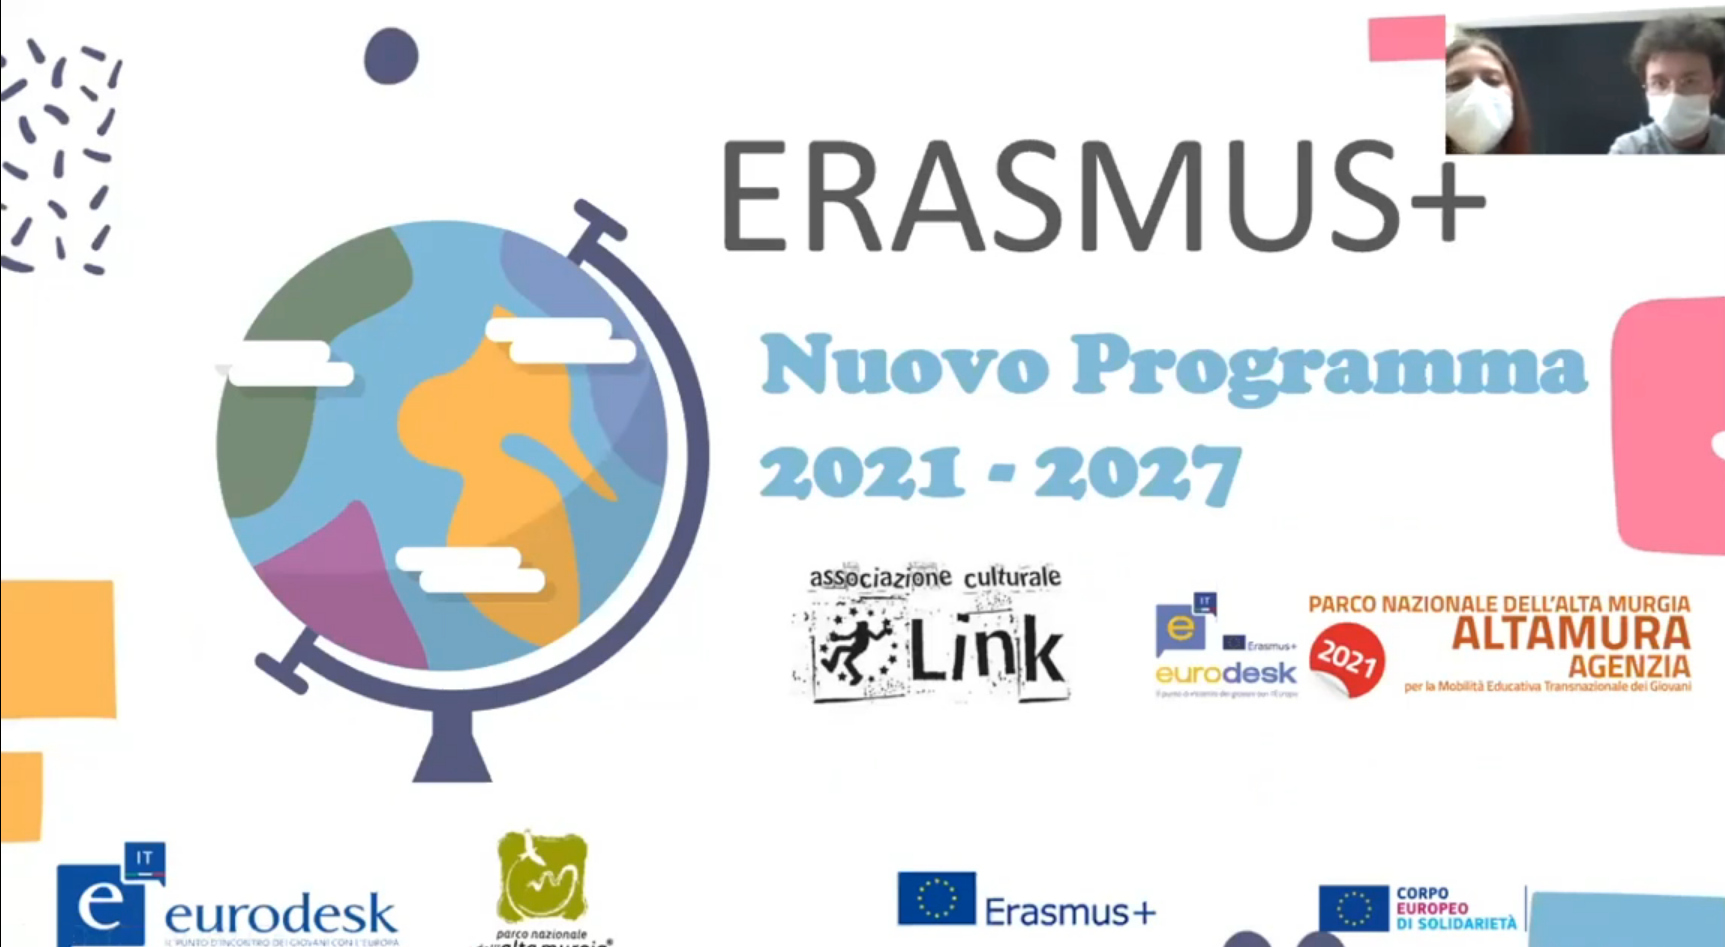 ERASMUS PLUS 2021 2027